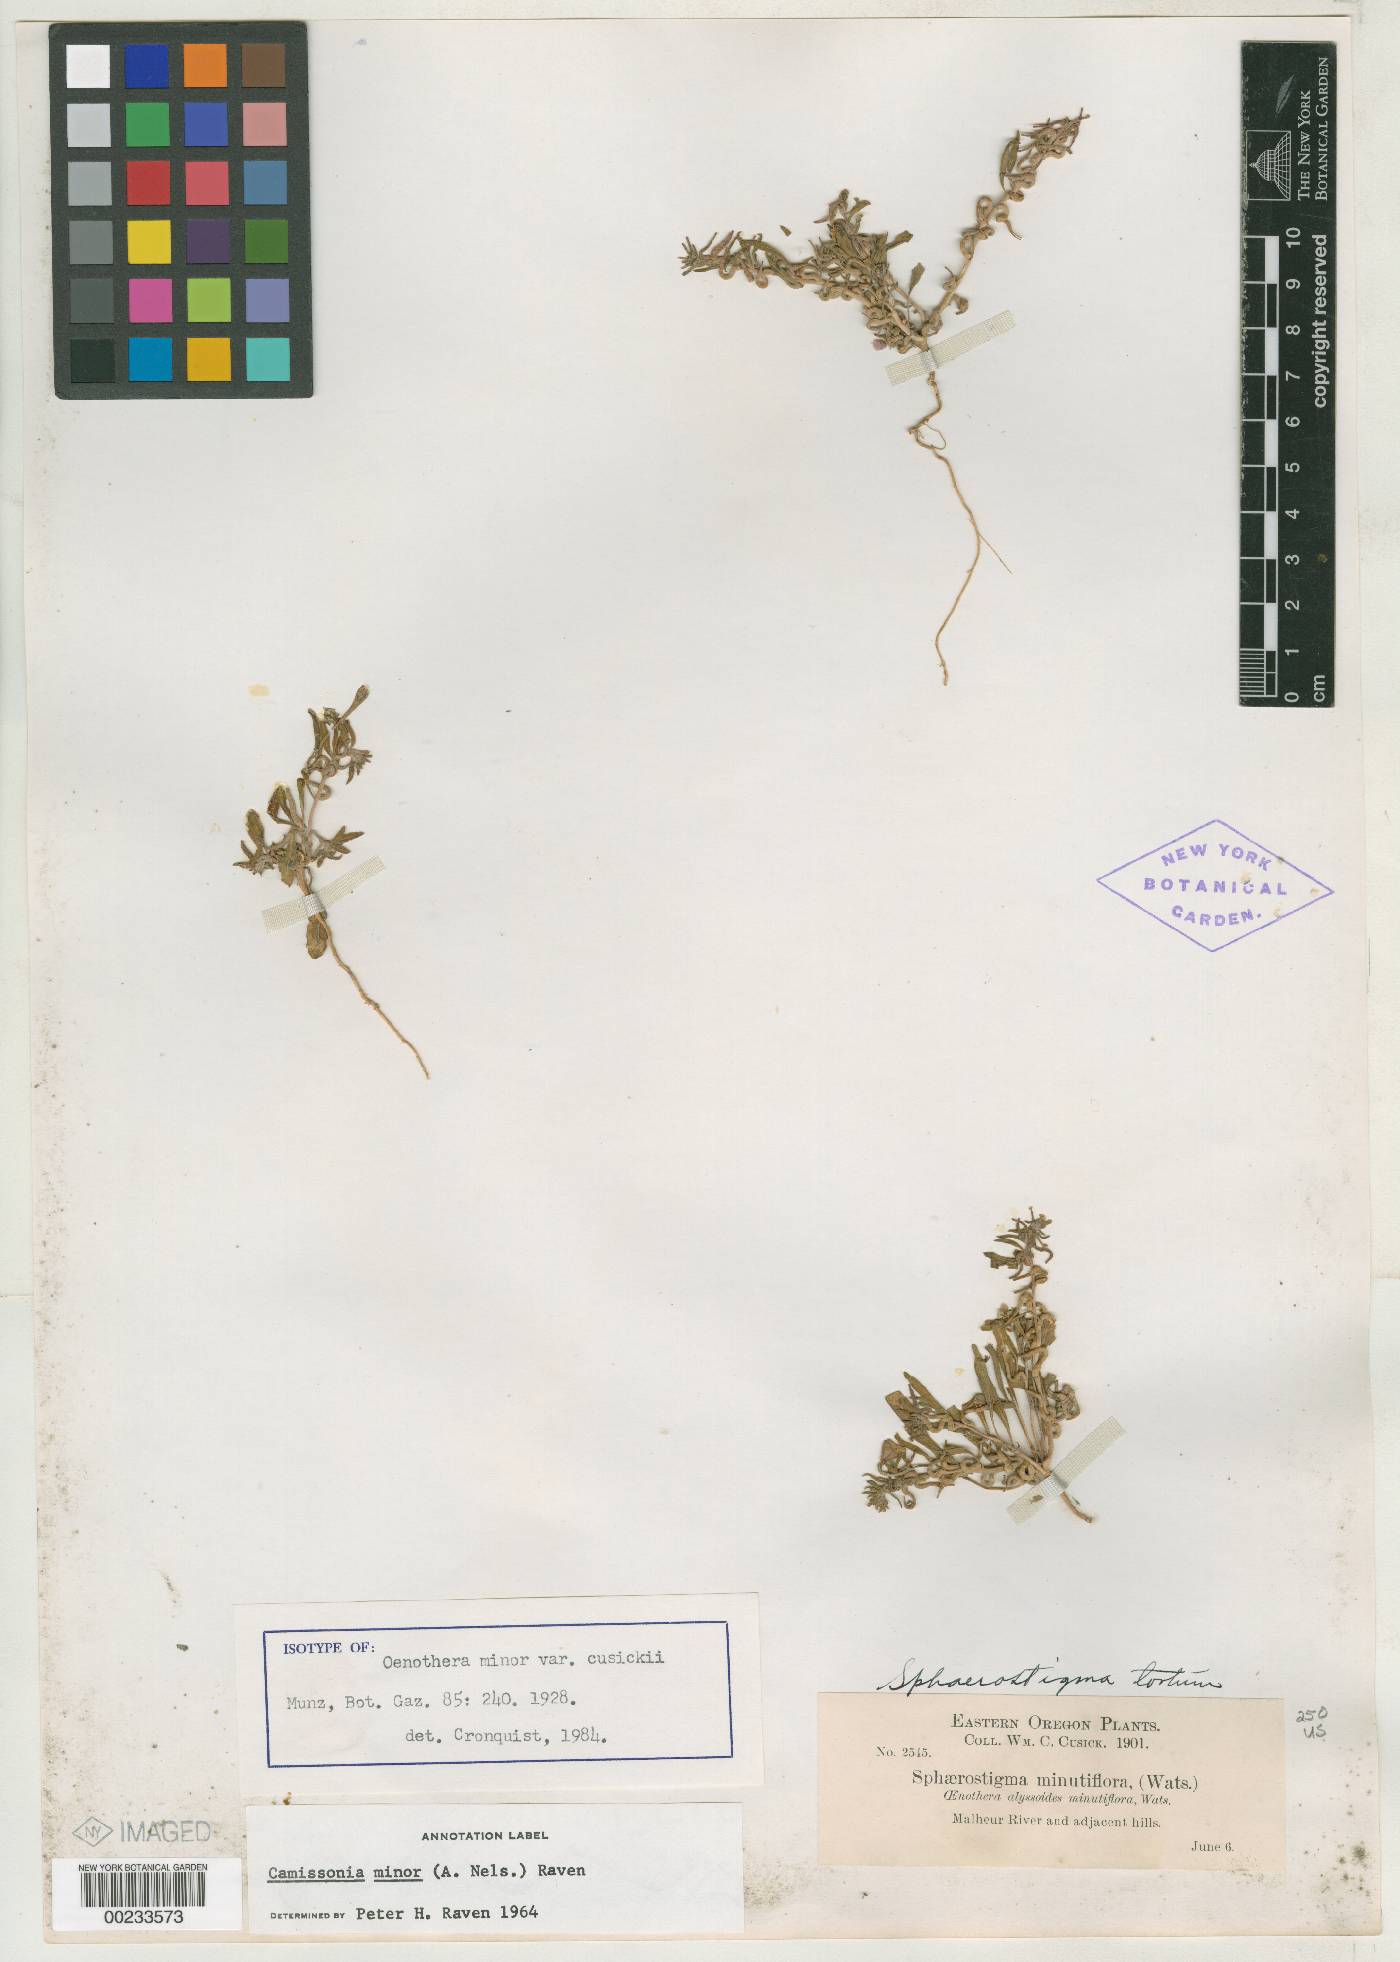 Oenothera minor var. cusickii image